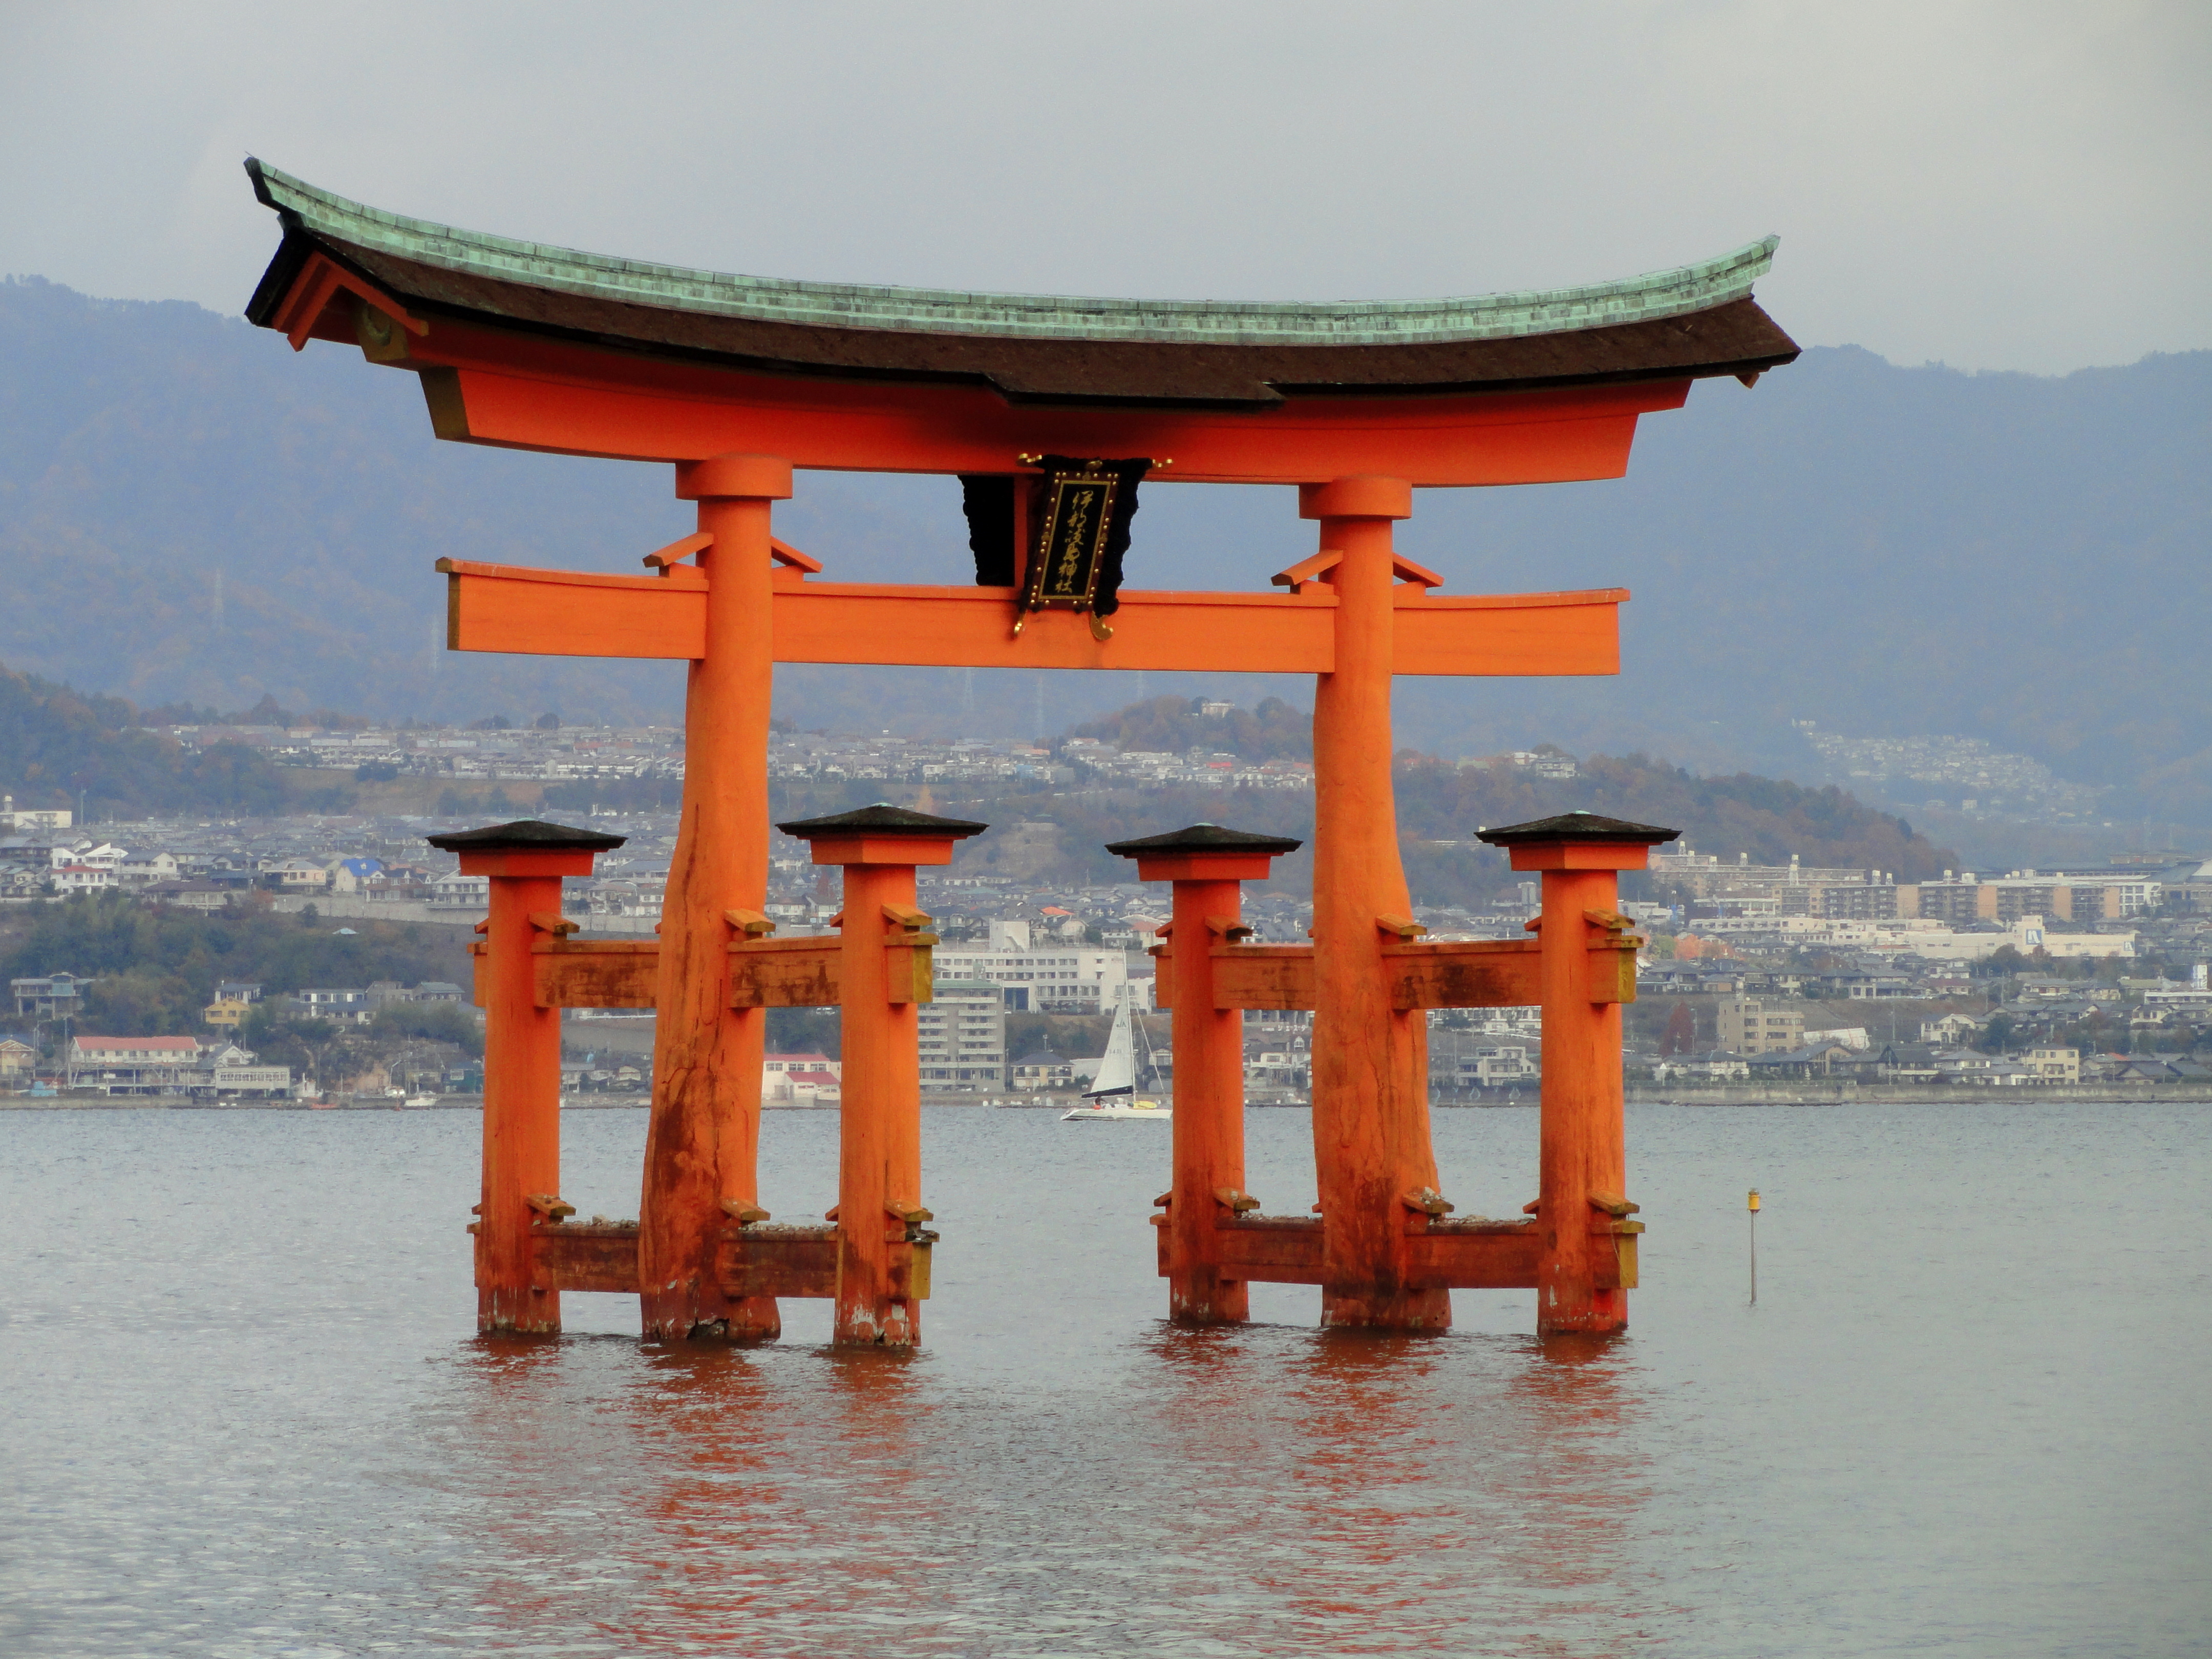 File:Itsukushima-jinja torii (Miyajima) - DSC01948.JPG - Wikimedia ...